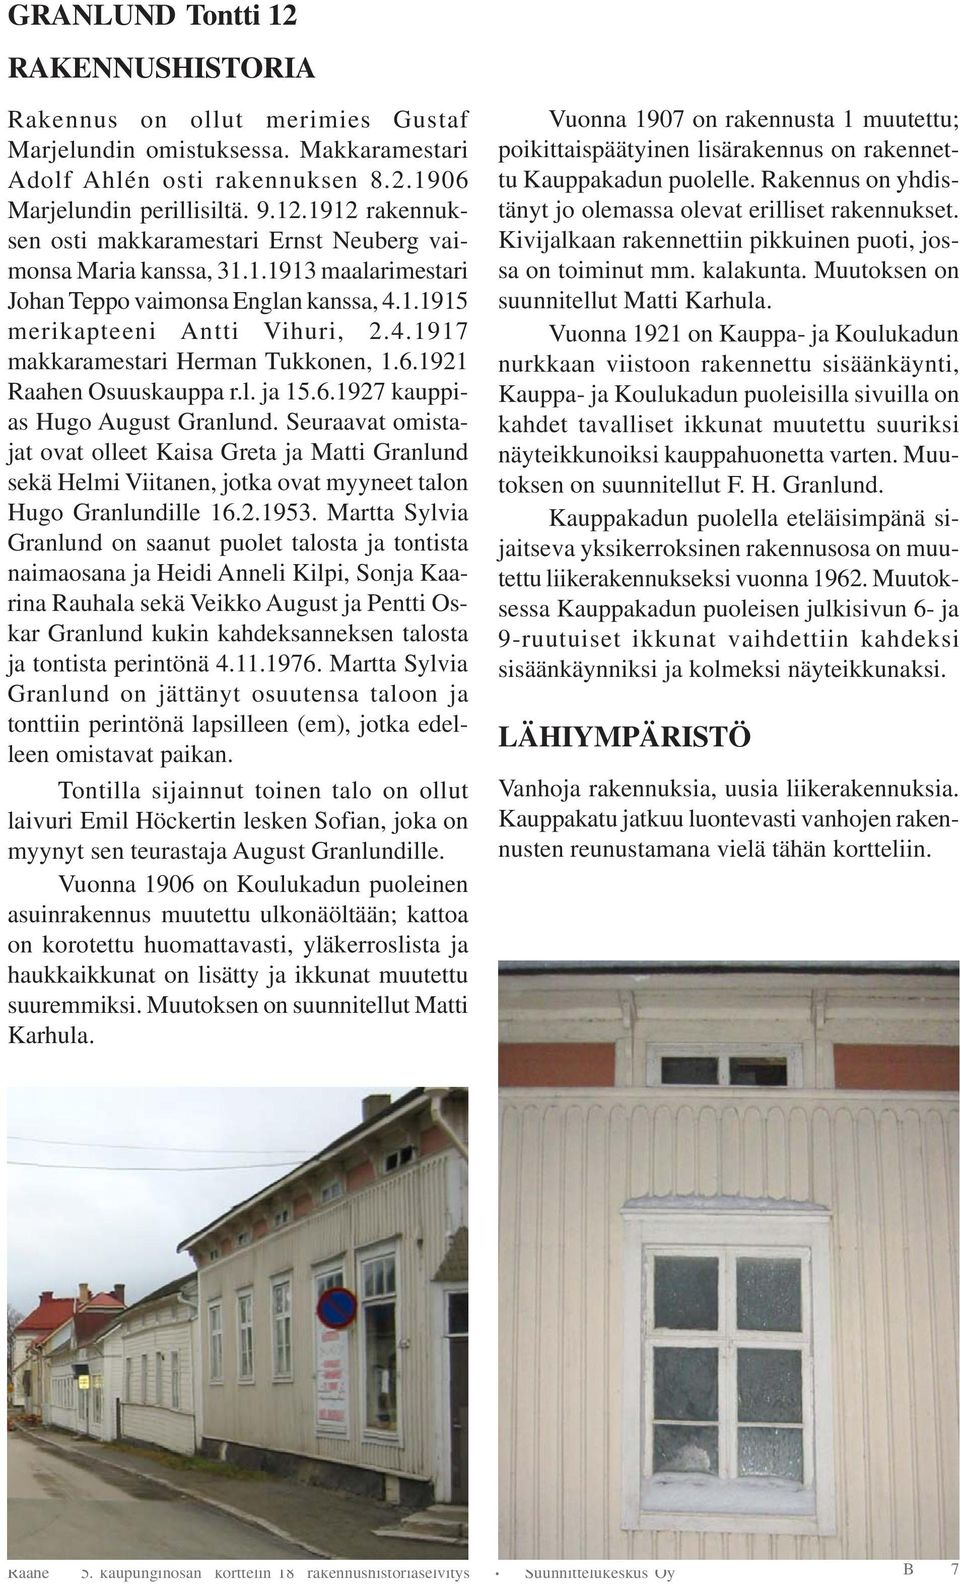 Seuraavat omistajat ovat olleet Kaisa Greta ja Matti Granlund sekä Helmi Viitanen, jotka ovat myyneet talon Hugo Granlundille 16.2.1953.